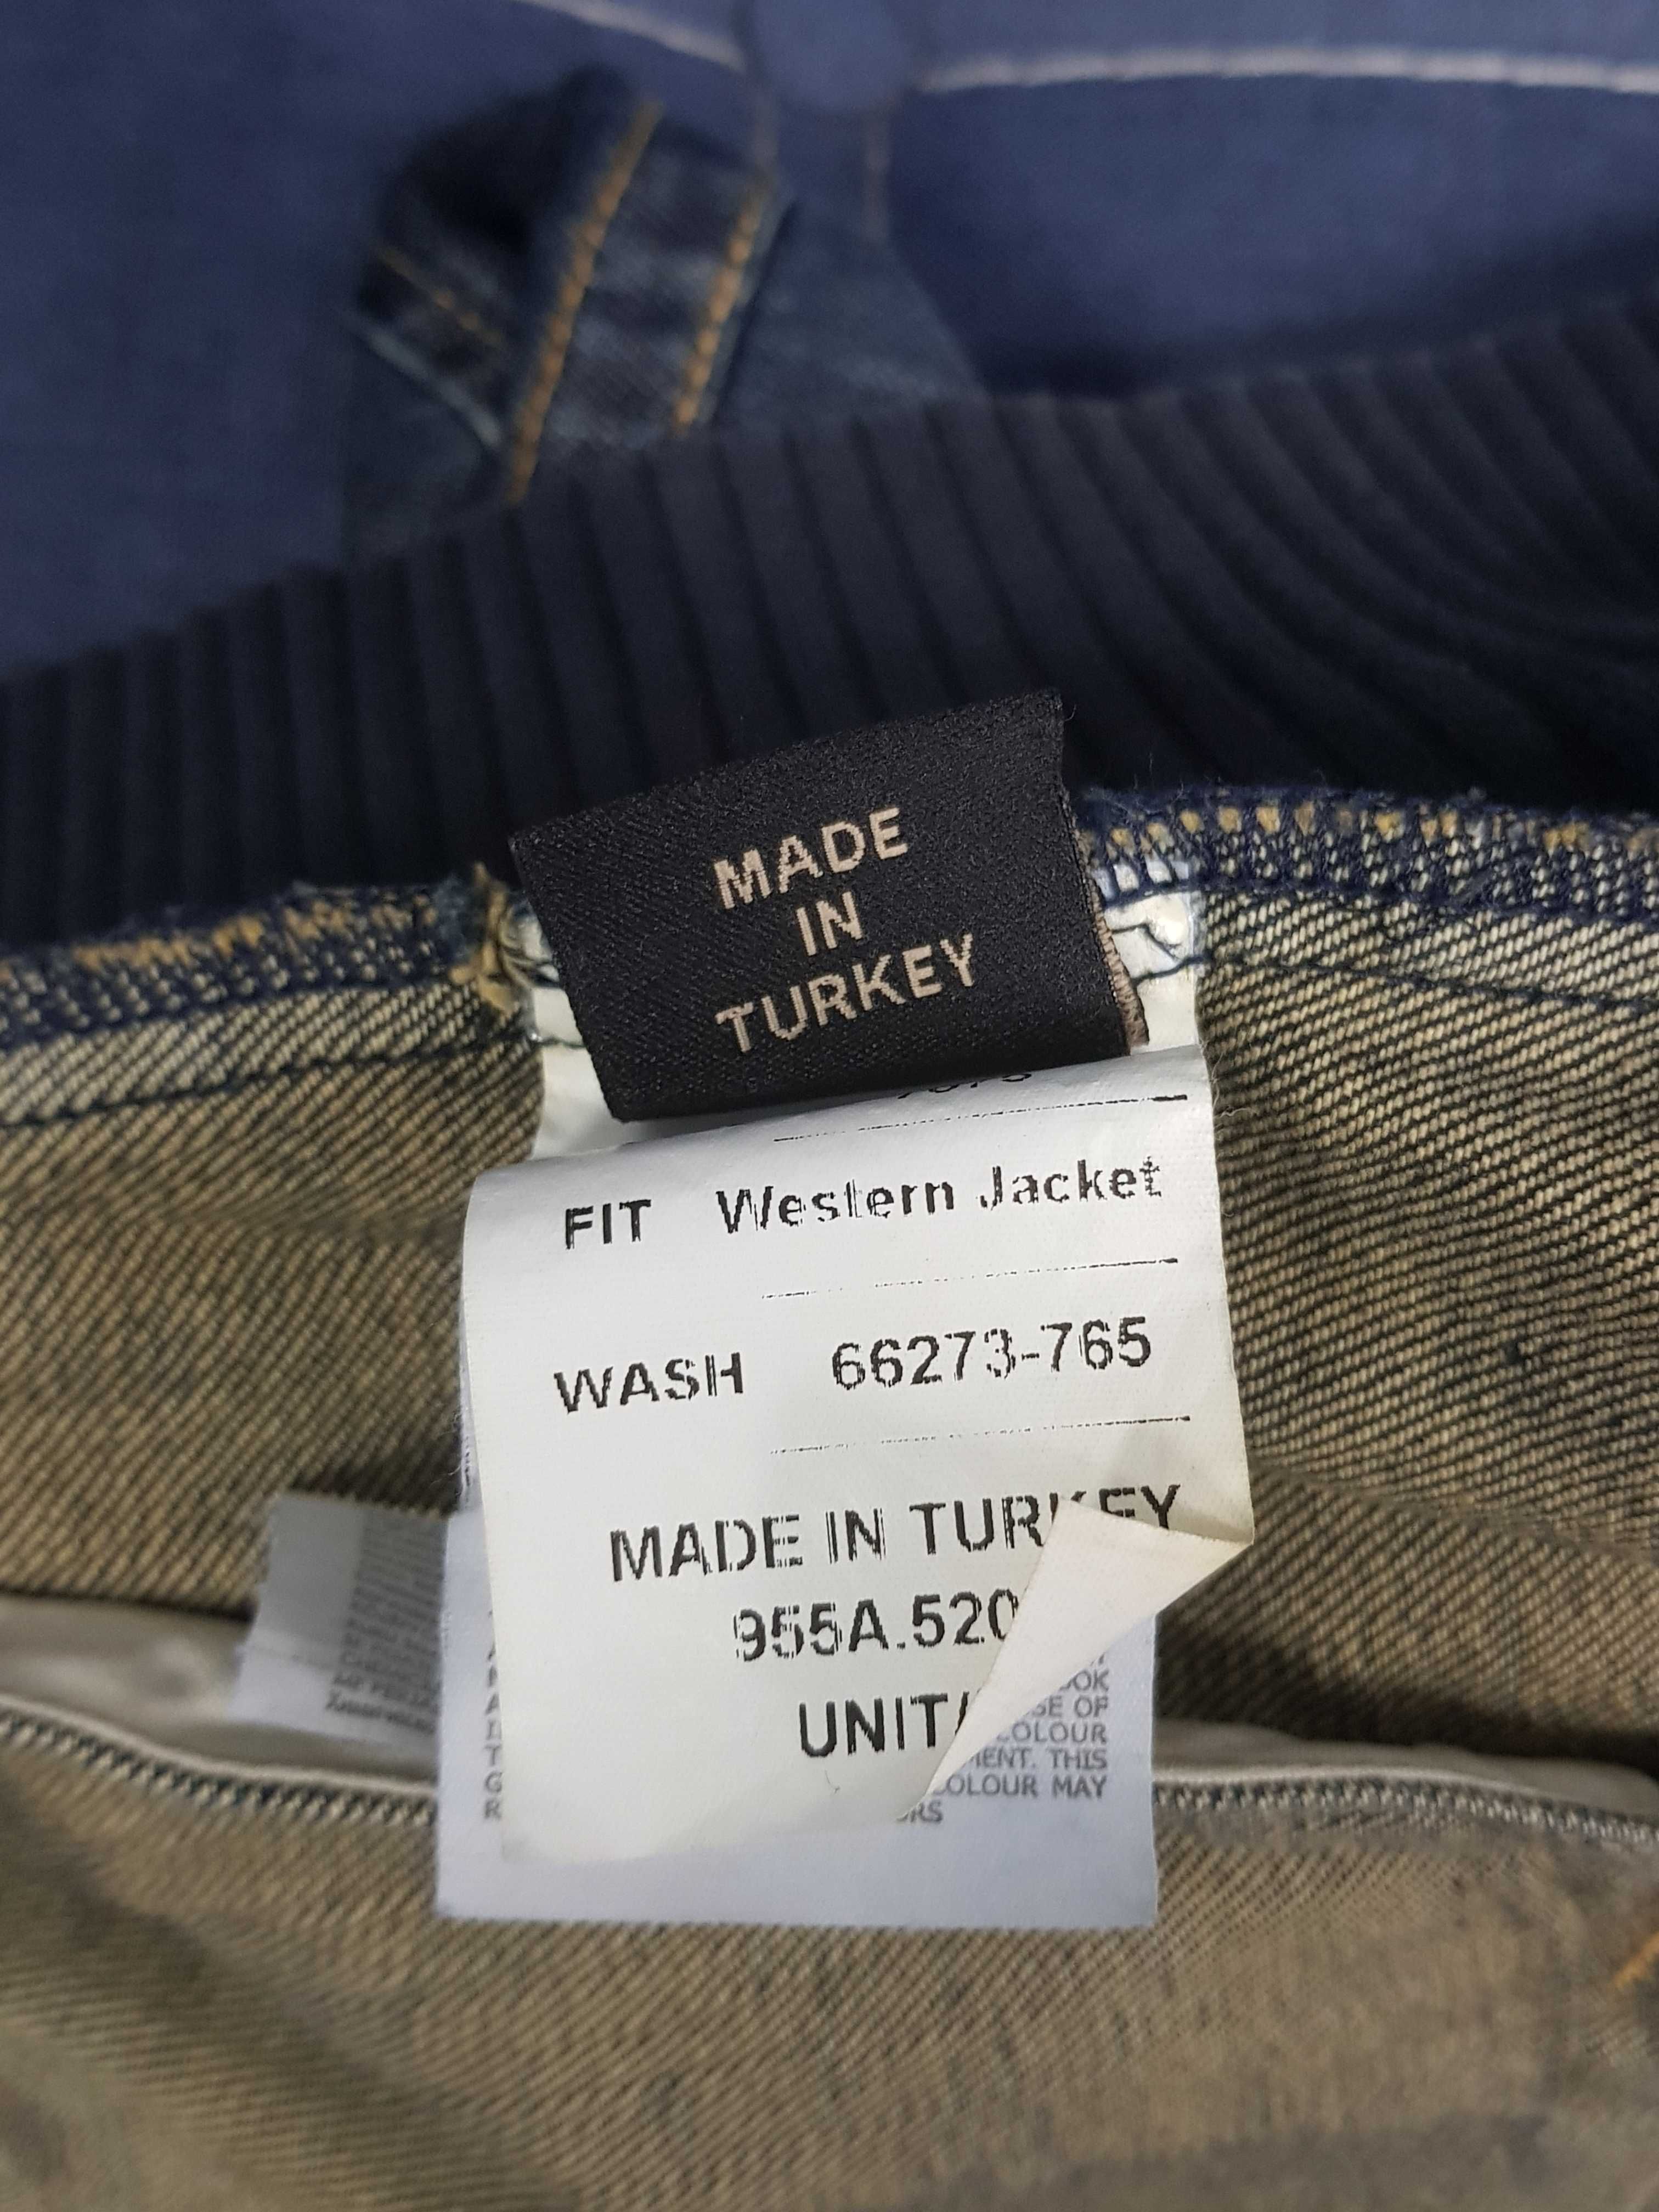 Куртка джинсовая мужская LTB,Original. Новая